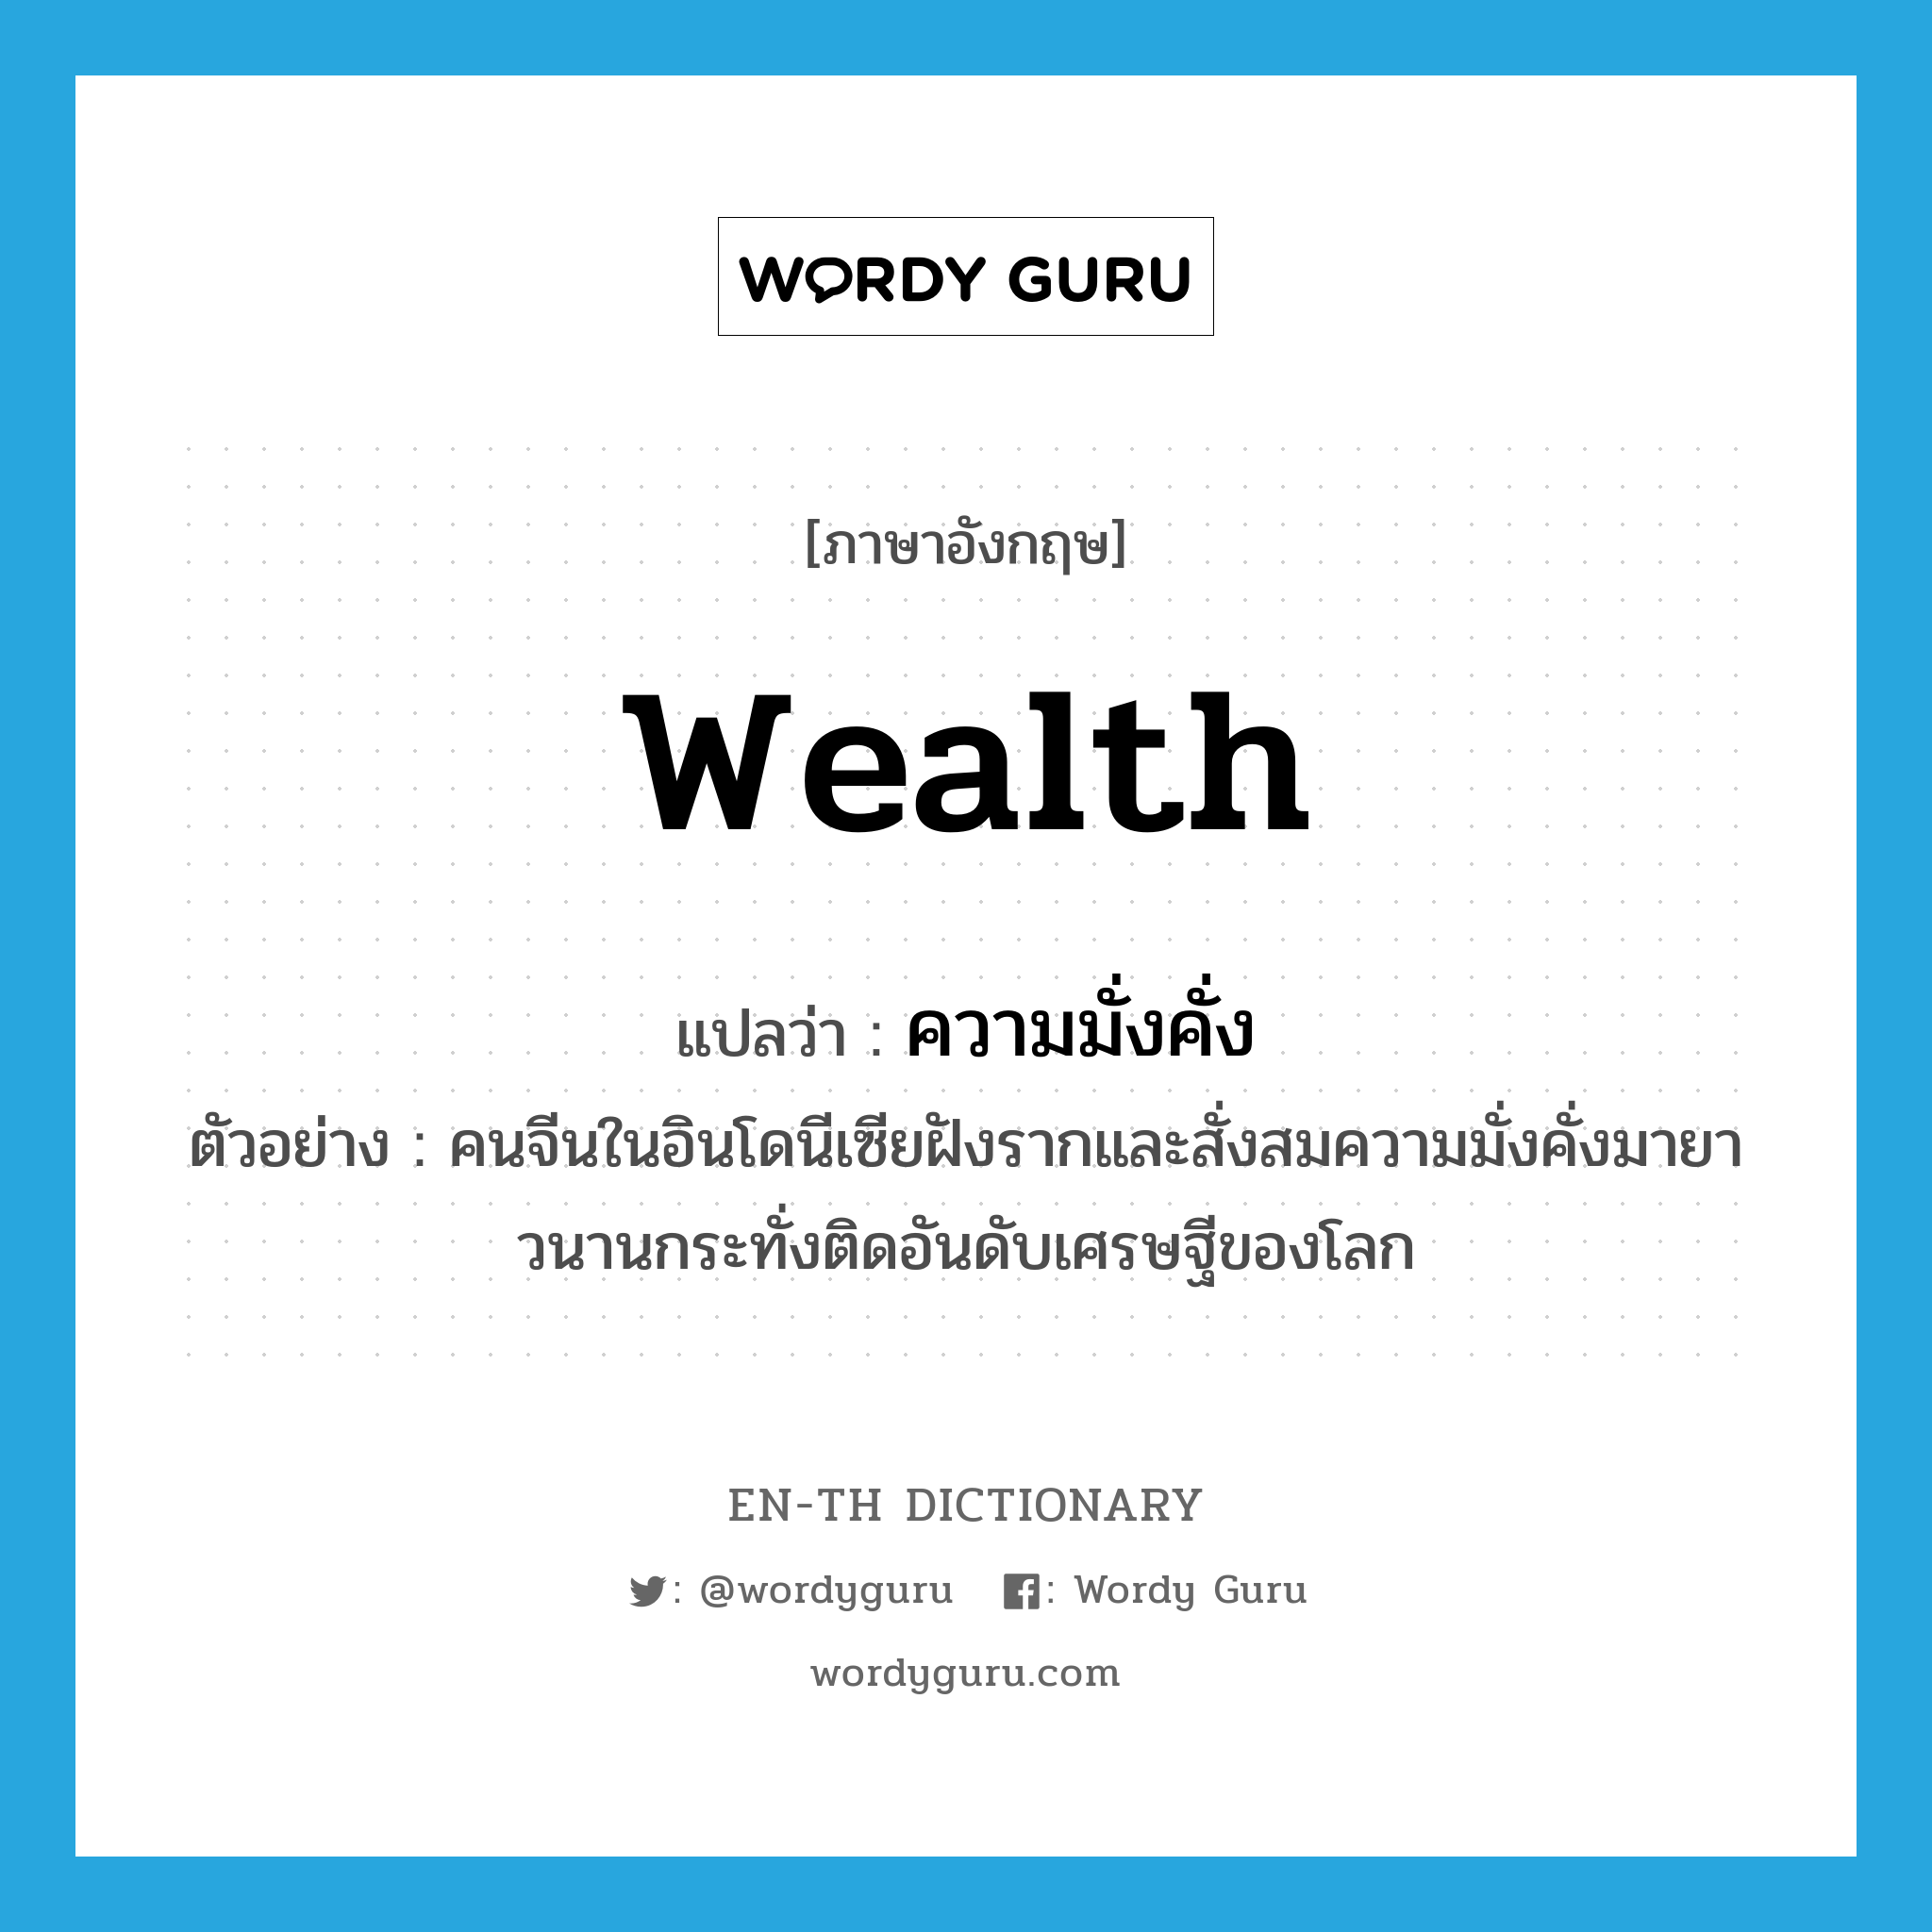 wealth แปลว่า?, คำศัพท์ภาษาอังกฤษ wealth แปลว่า ความมั่งคั่ง ประเภท N ตัวอย่าง คนจีนในอินโดนีเซียฝังรากและสั่งสมความมั่งคั่งมายาวนานกระทั่งติดอันดับเศรษฐีของโลก หมวด N